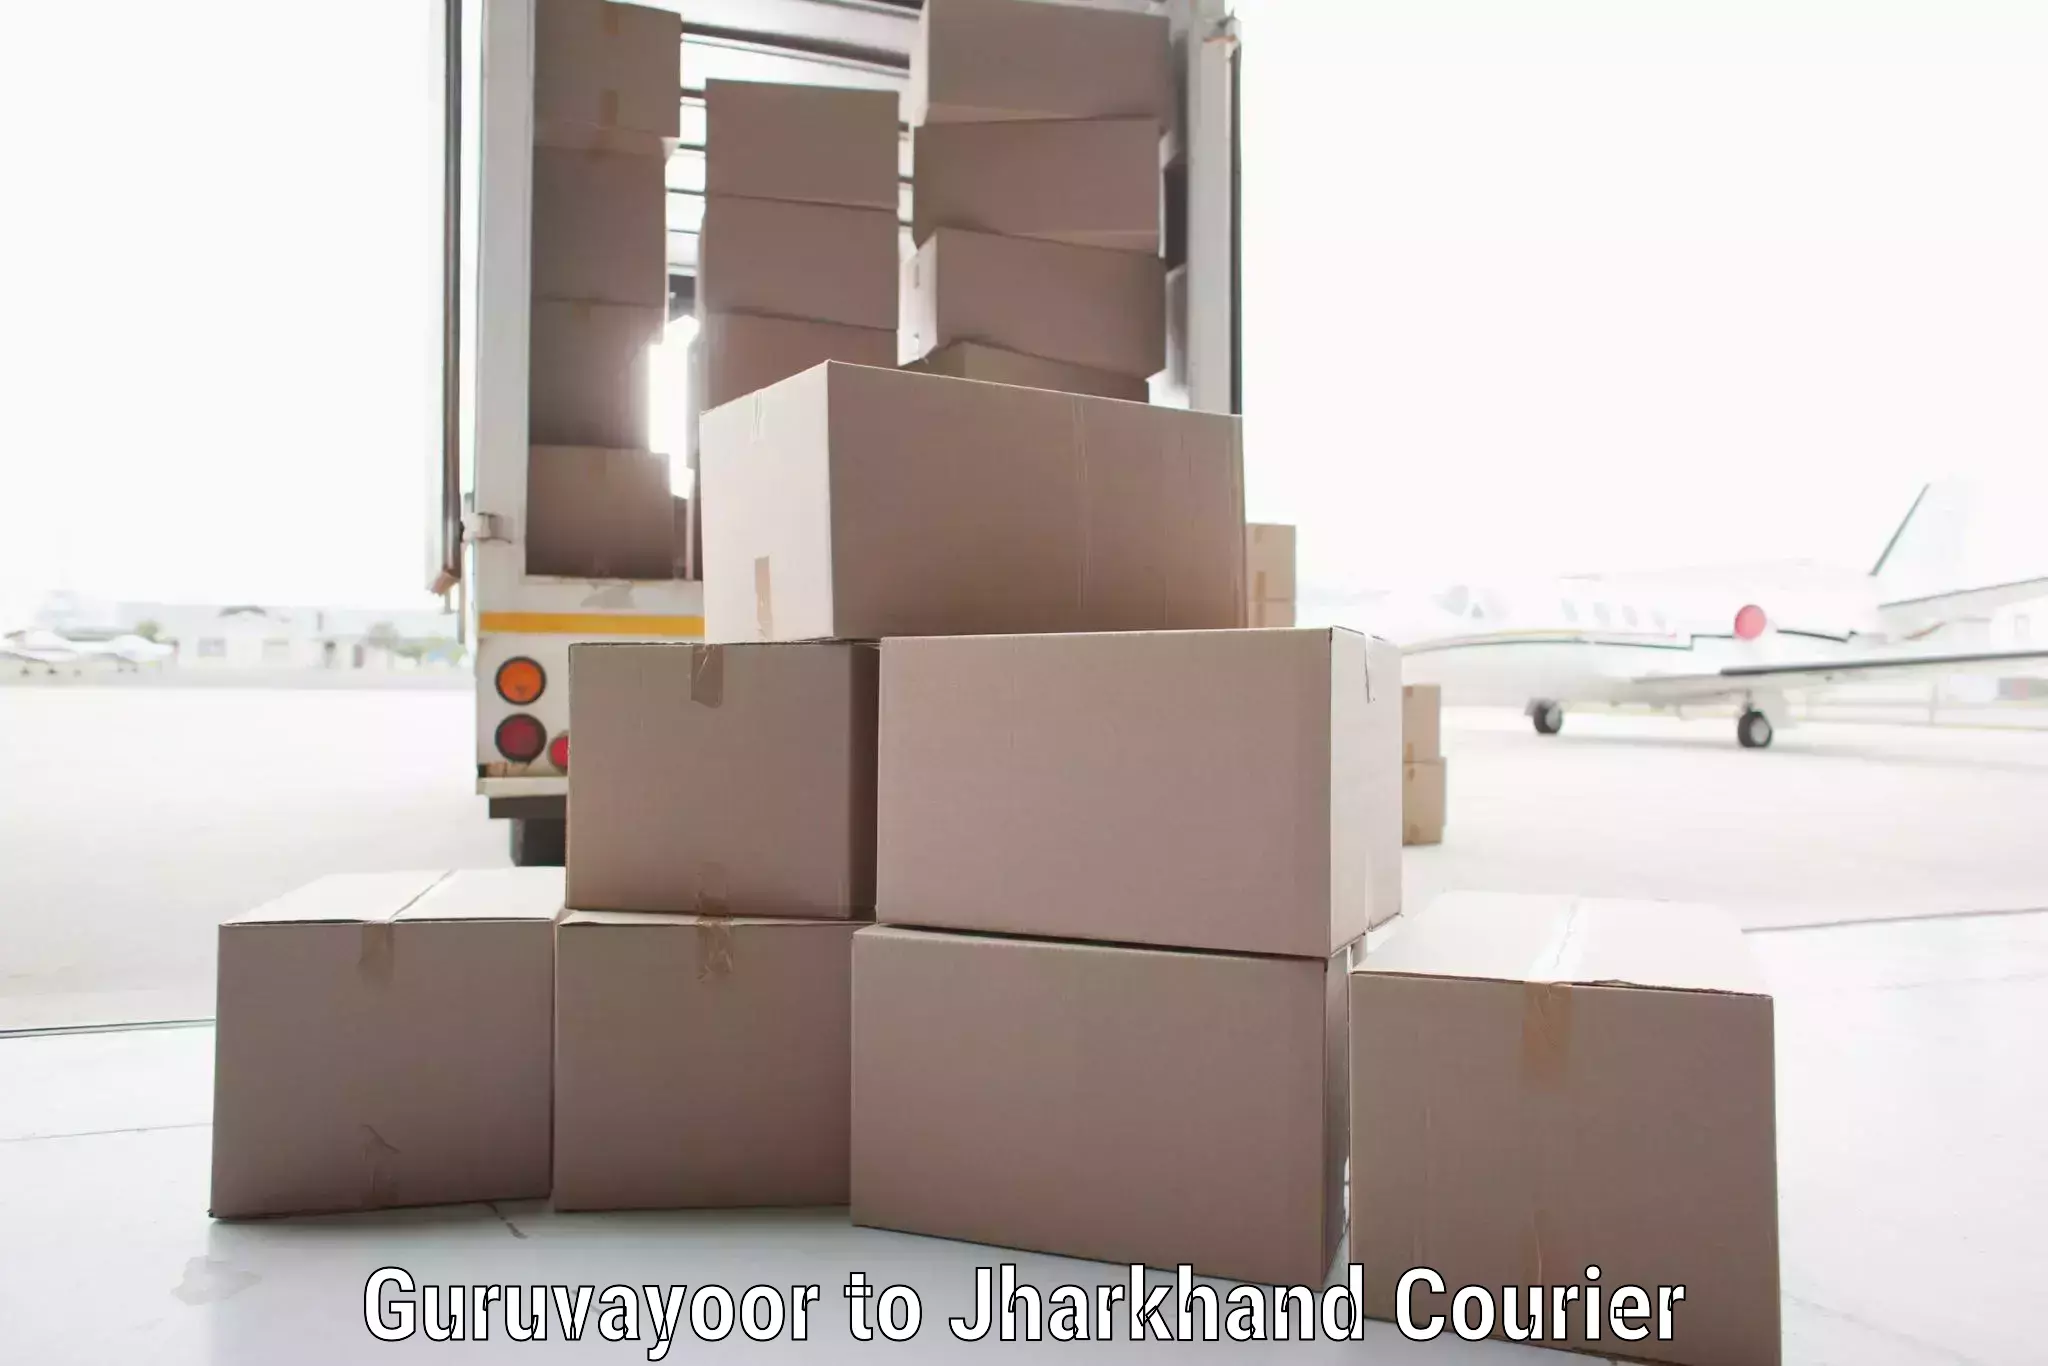 Supply chain efficiency Guruvayoor to Jharkhand